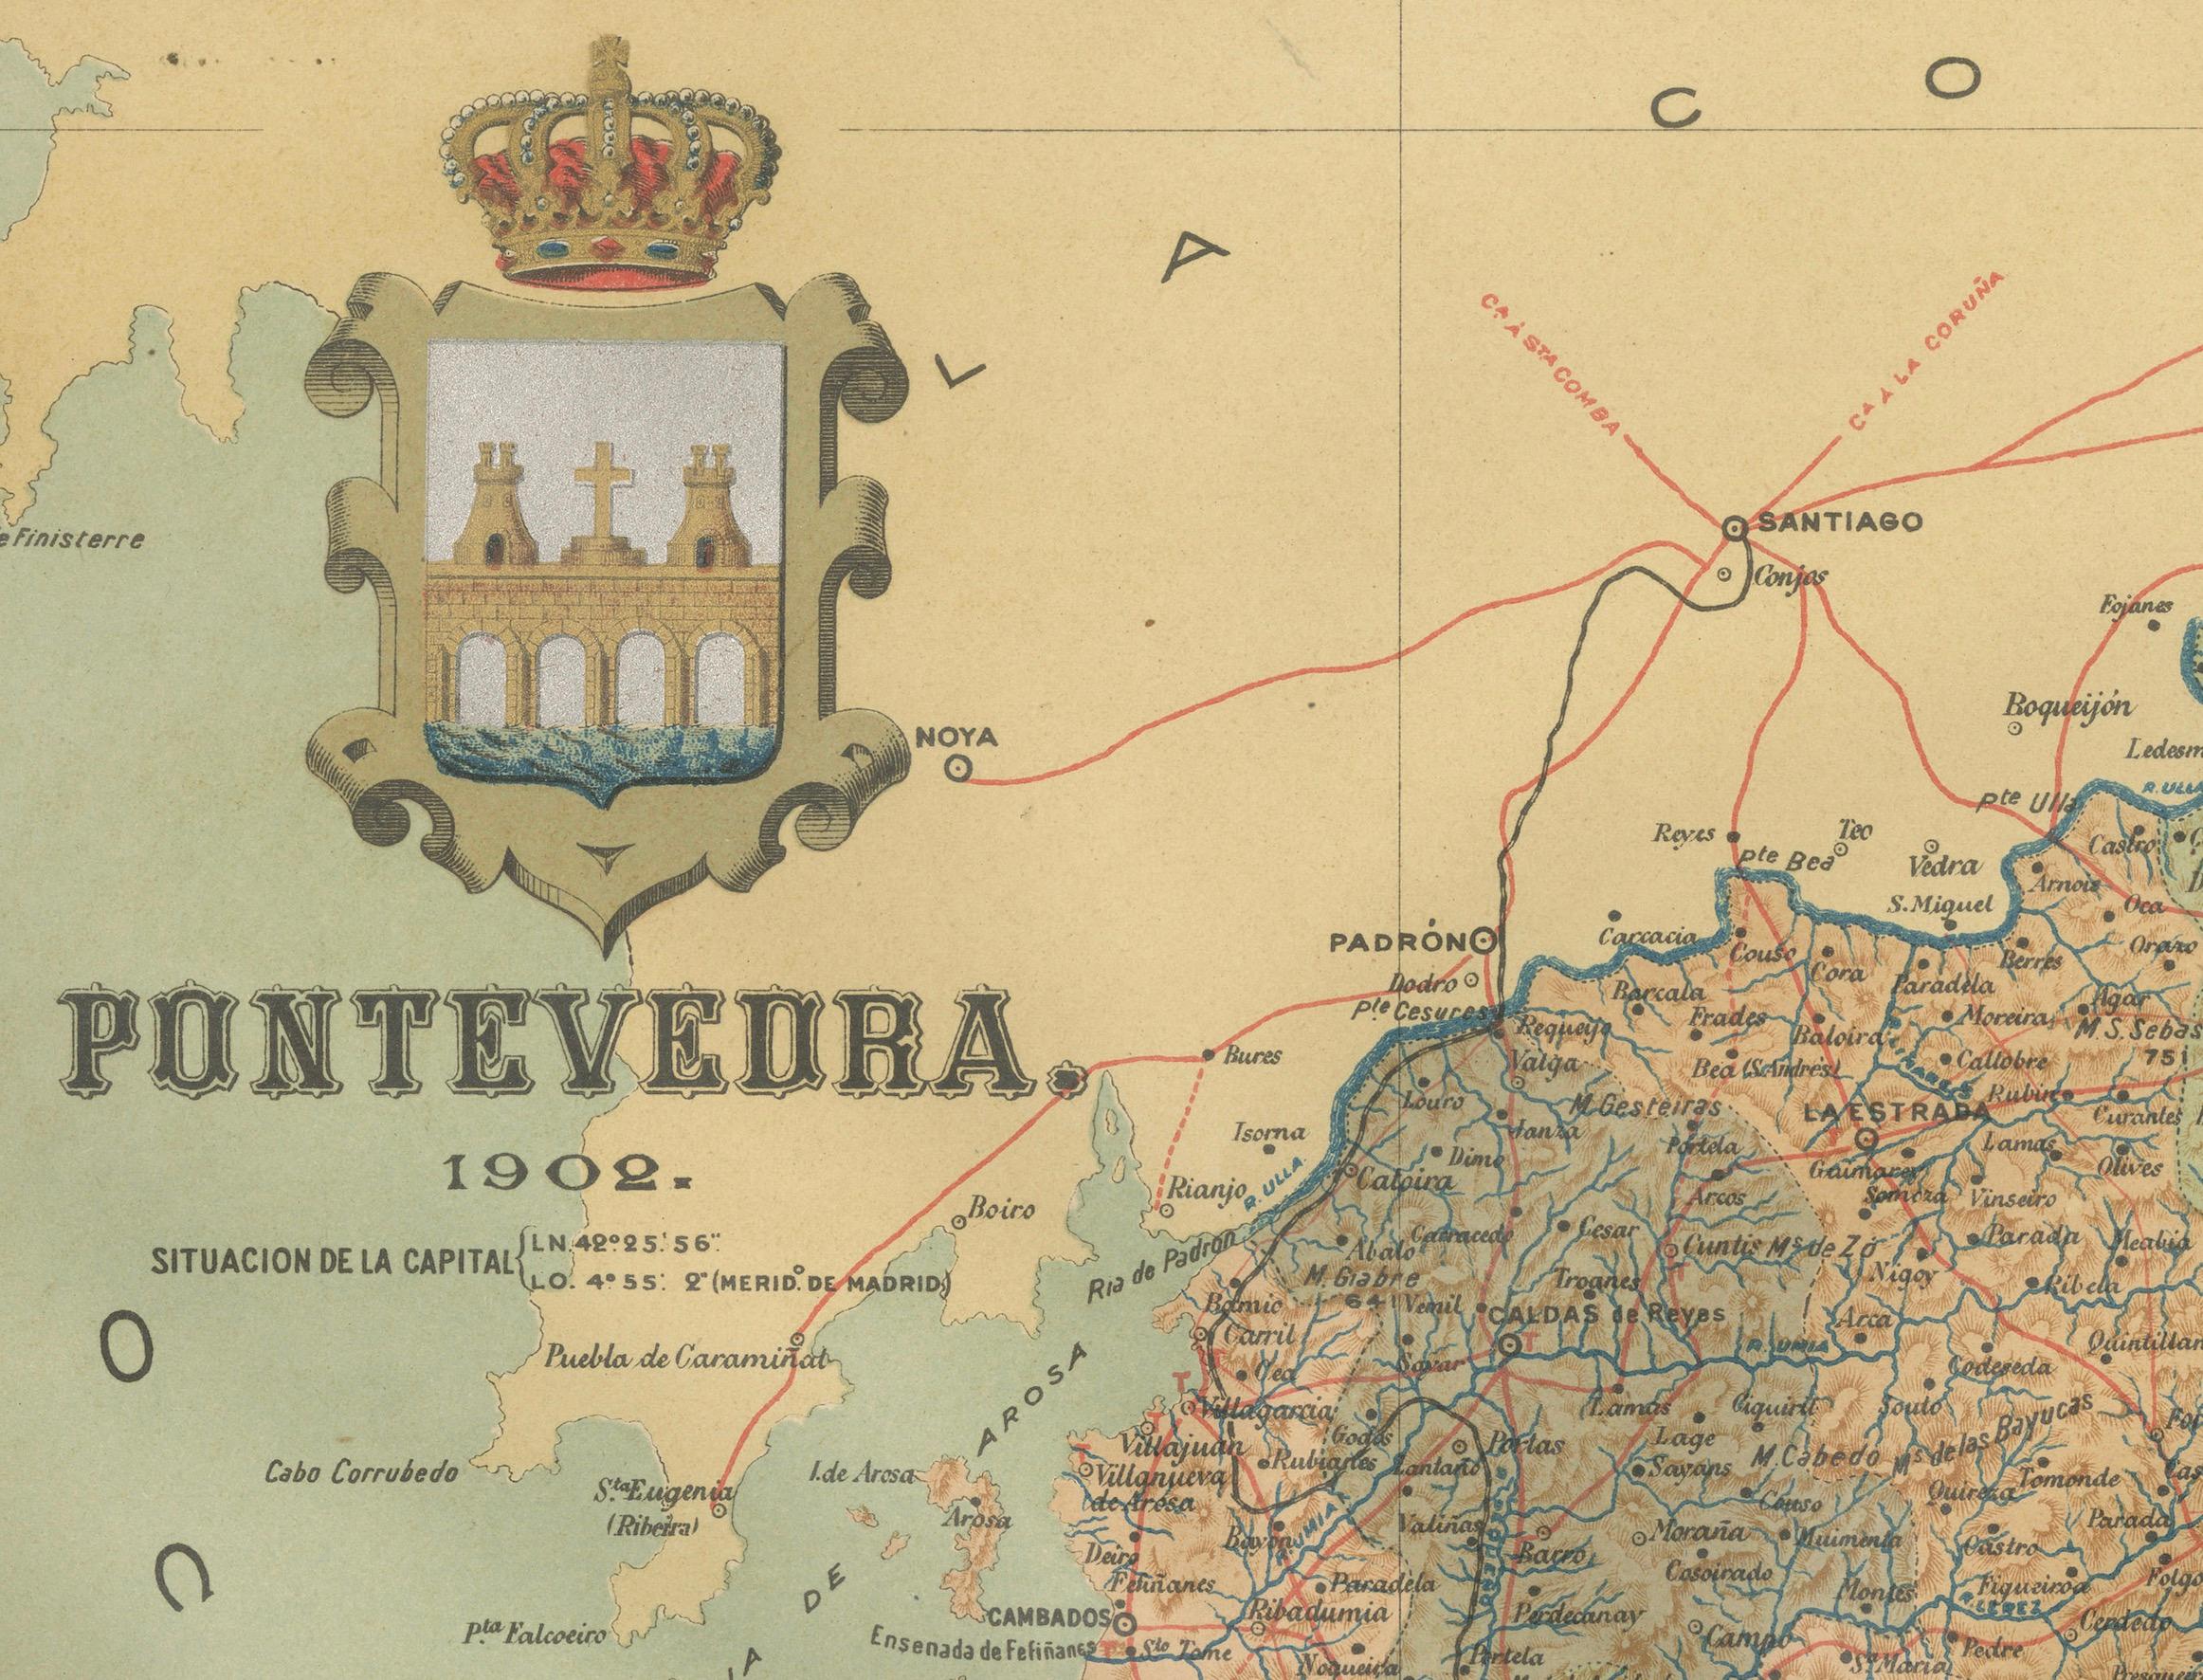 Cartographic Survey of Pontevedra, 1902: Crossroads of Galicia